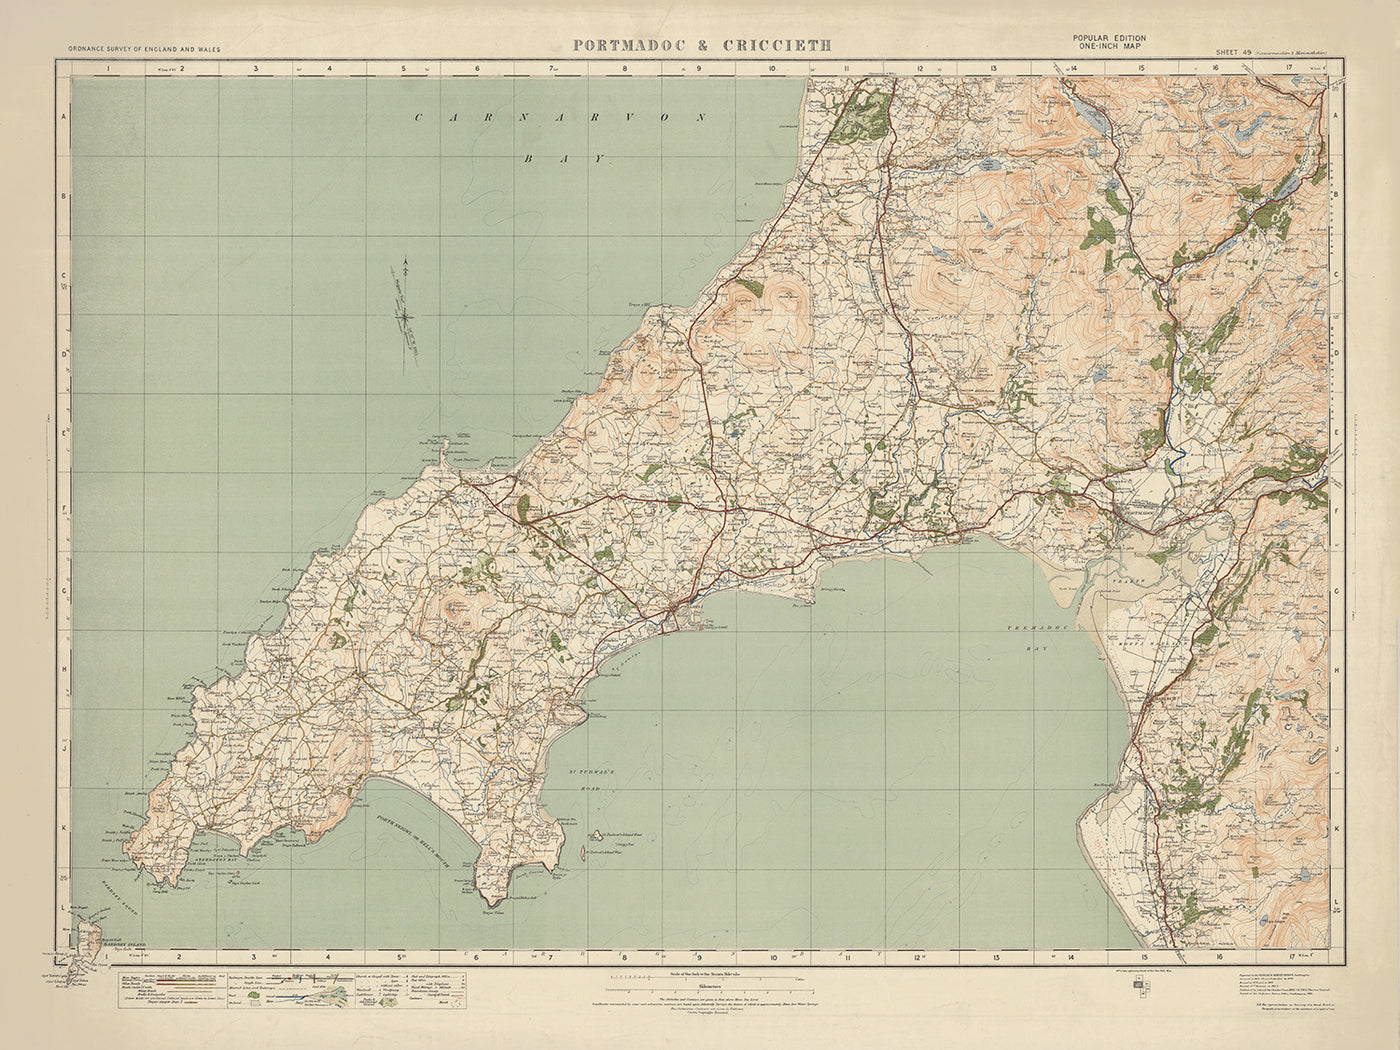 Old Ordnance Survey Map, Blatt 49 – Portmadoc & Criccieth, 1925: Harlech, Pwllheli, Abersoch, Yr Wyddfa (Mt. Snowdon), Eryri-Nationalpark